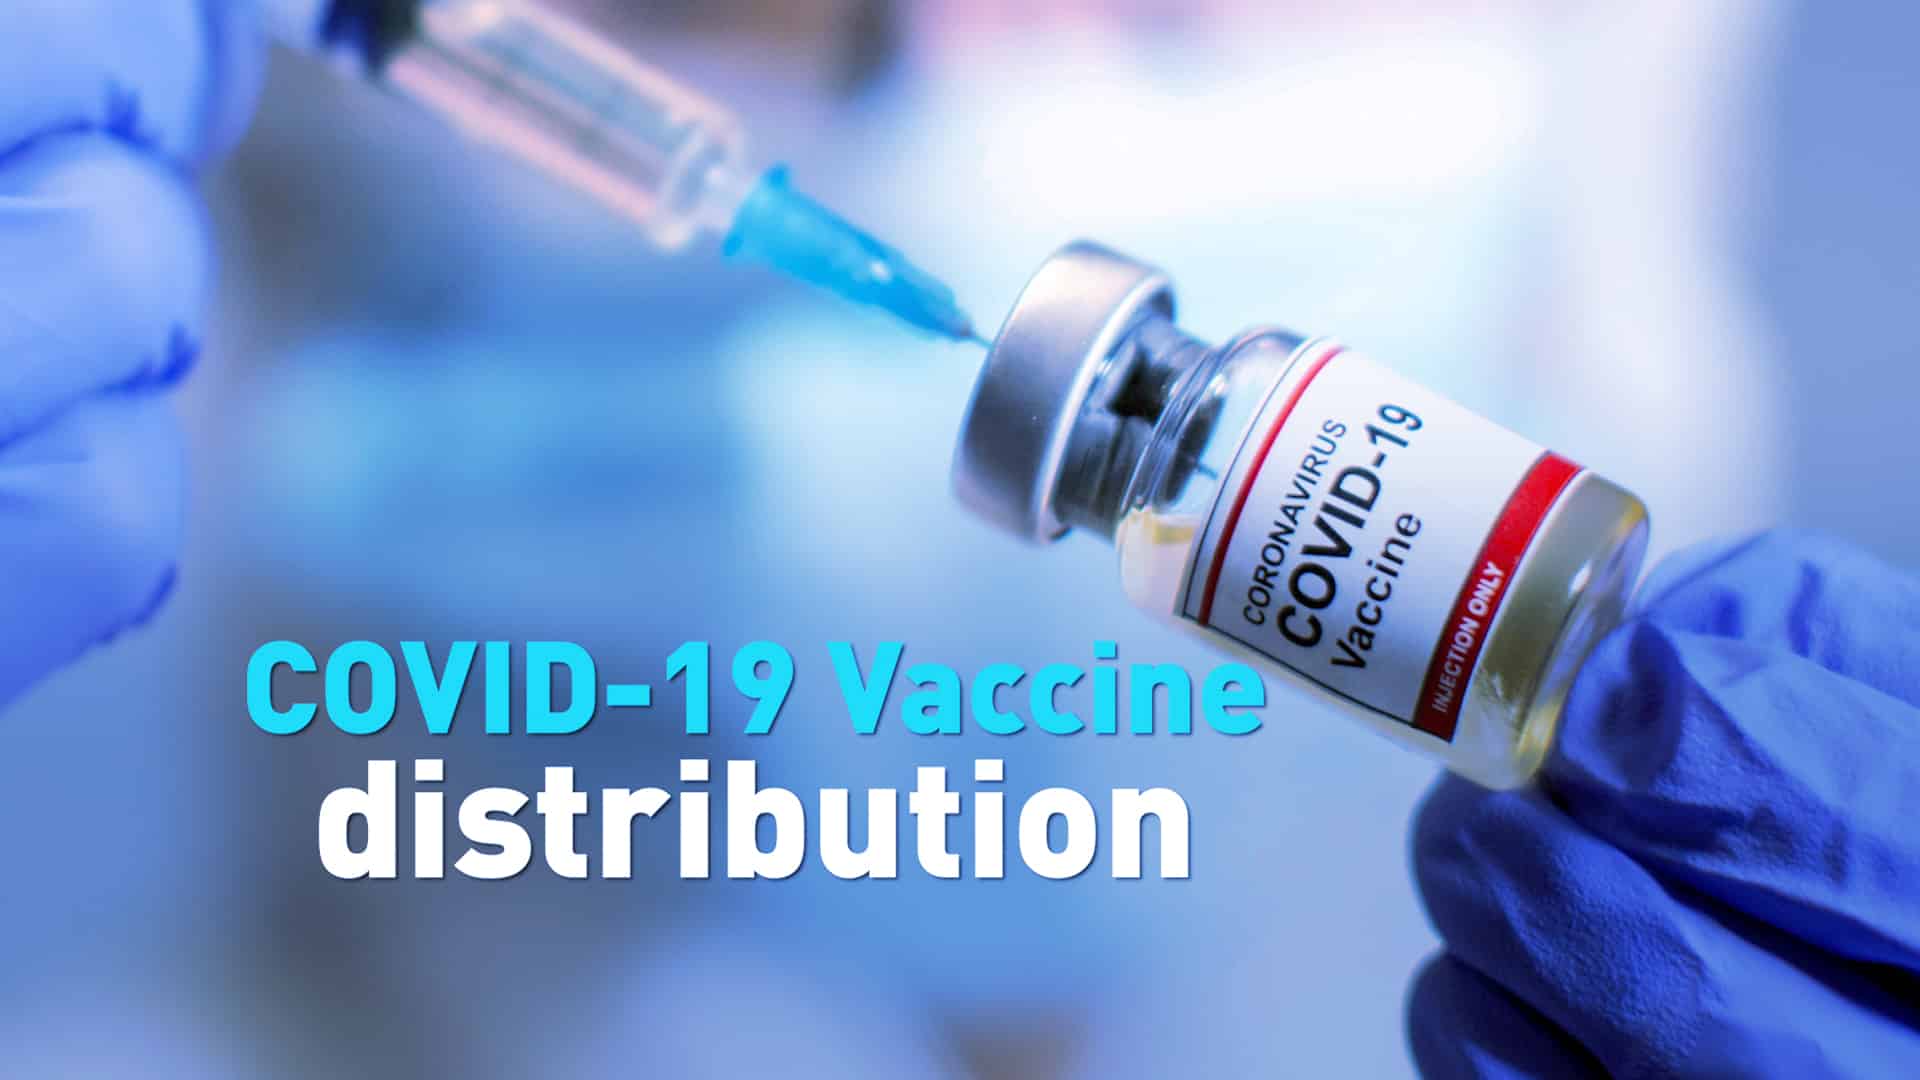 Govt starts contest for strengthening digital network platform for COVID-19 vaccine distribution